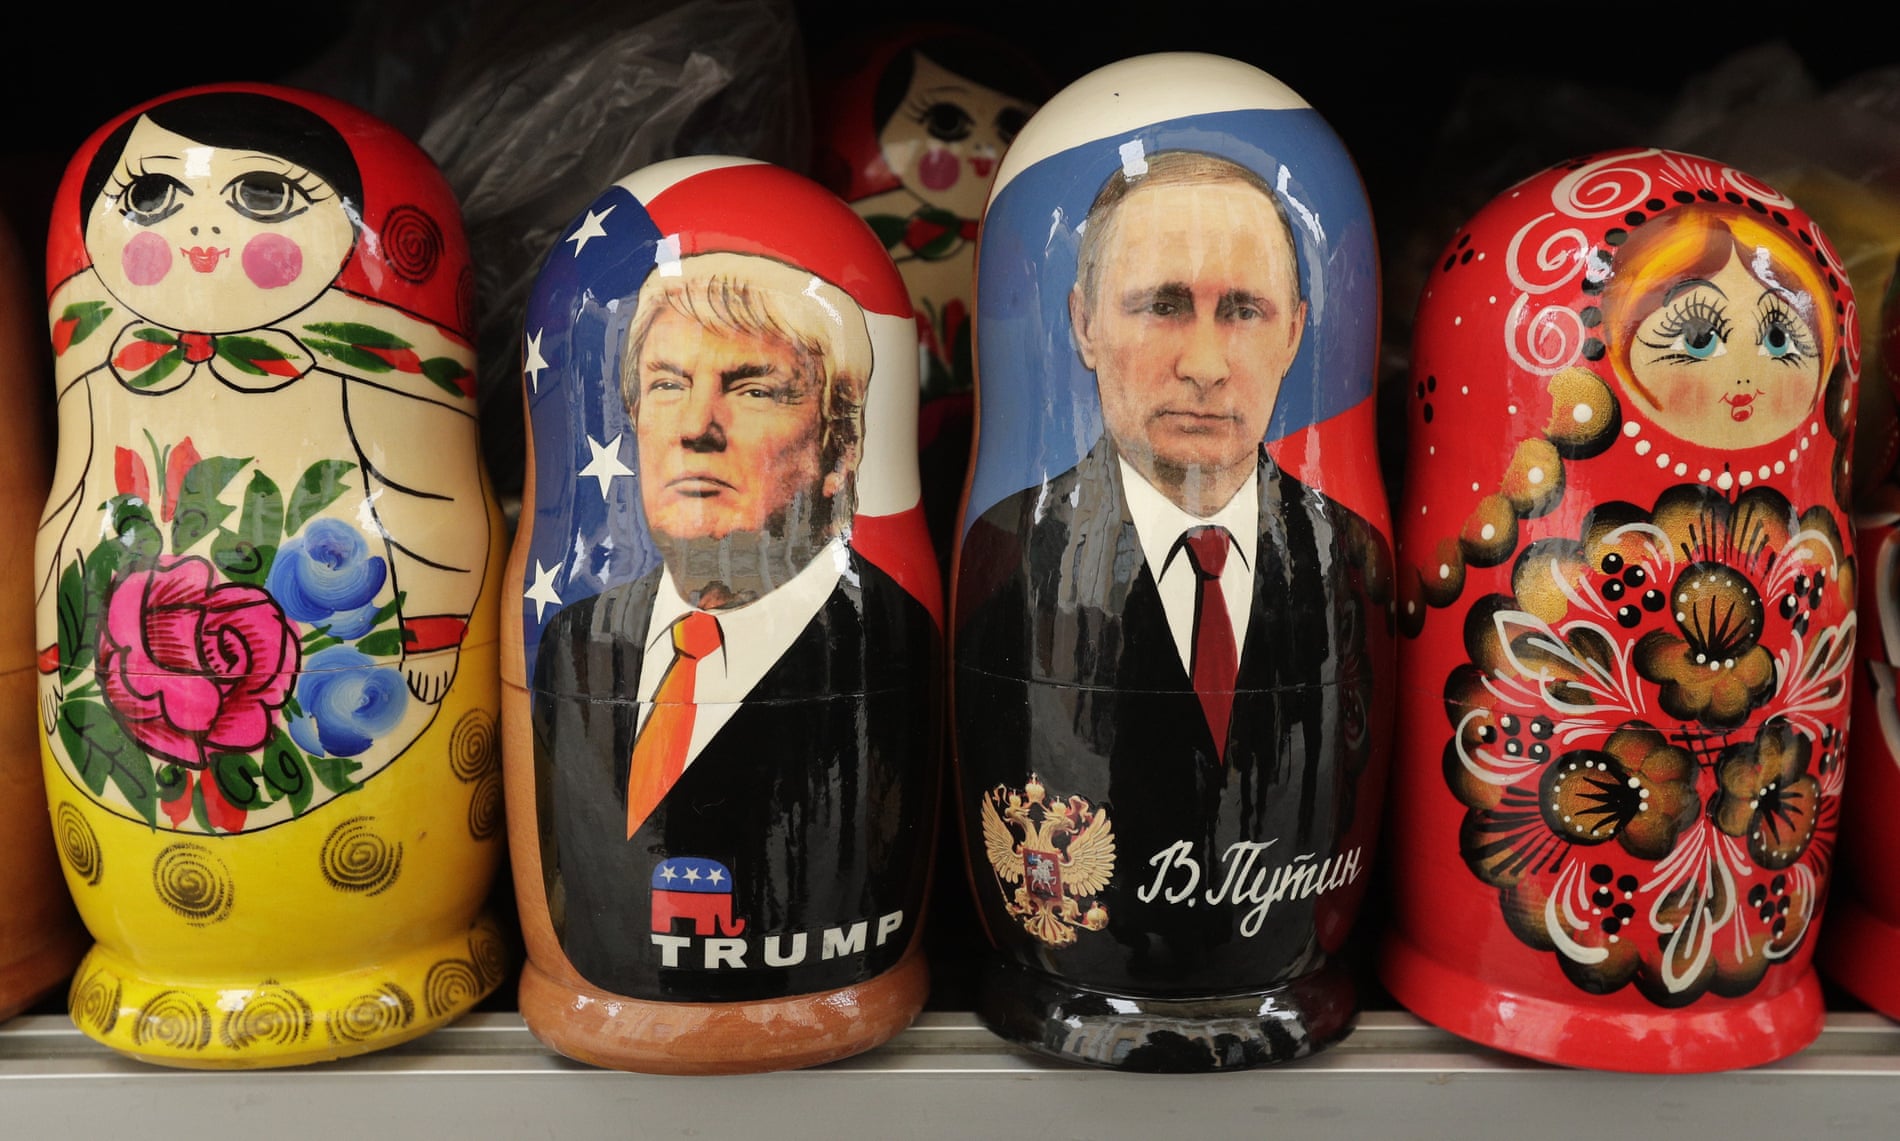 Russian matryoshka dolls of Donald Trump and Vladimir Putin.